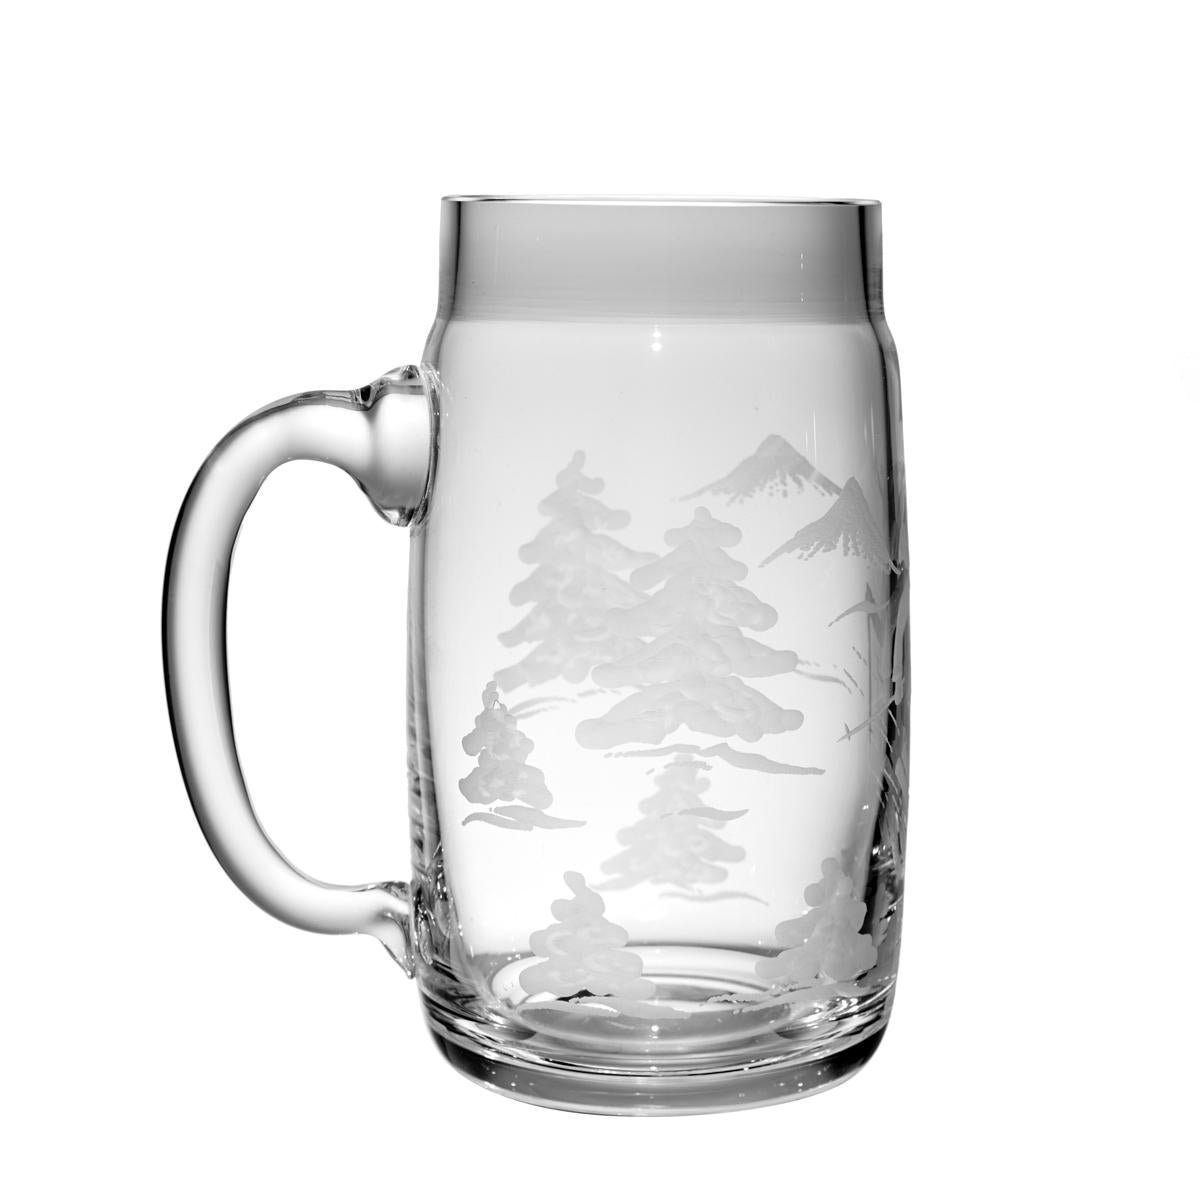 German Black Forest Beer Glass Skier Decor Sofina Boutique Kitzbuehel For Sale